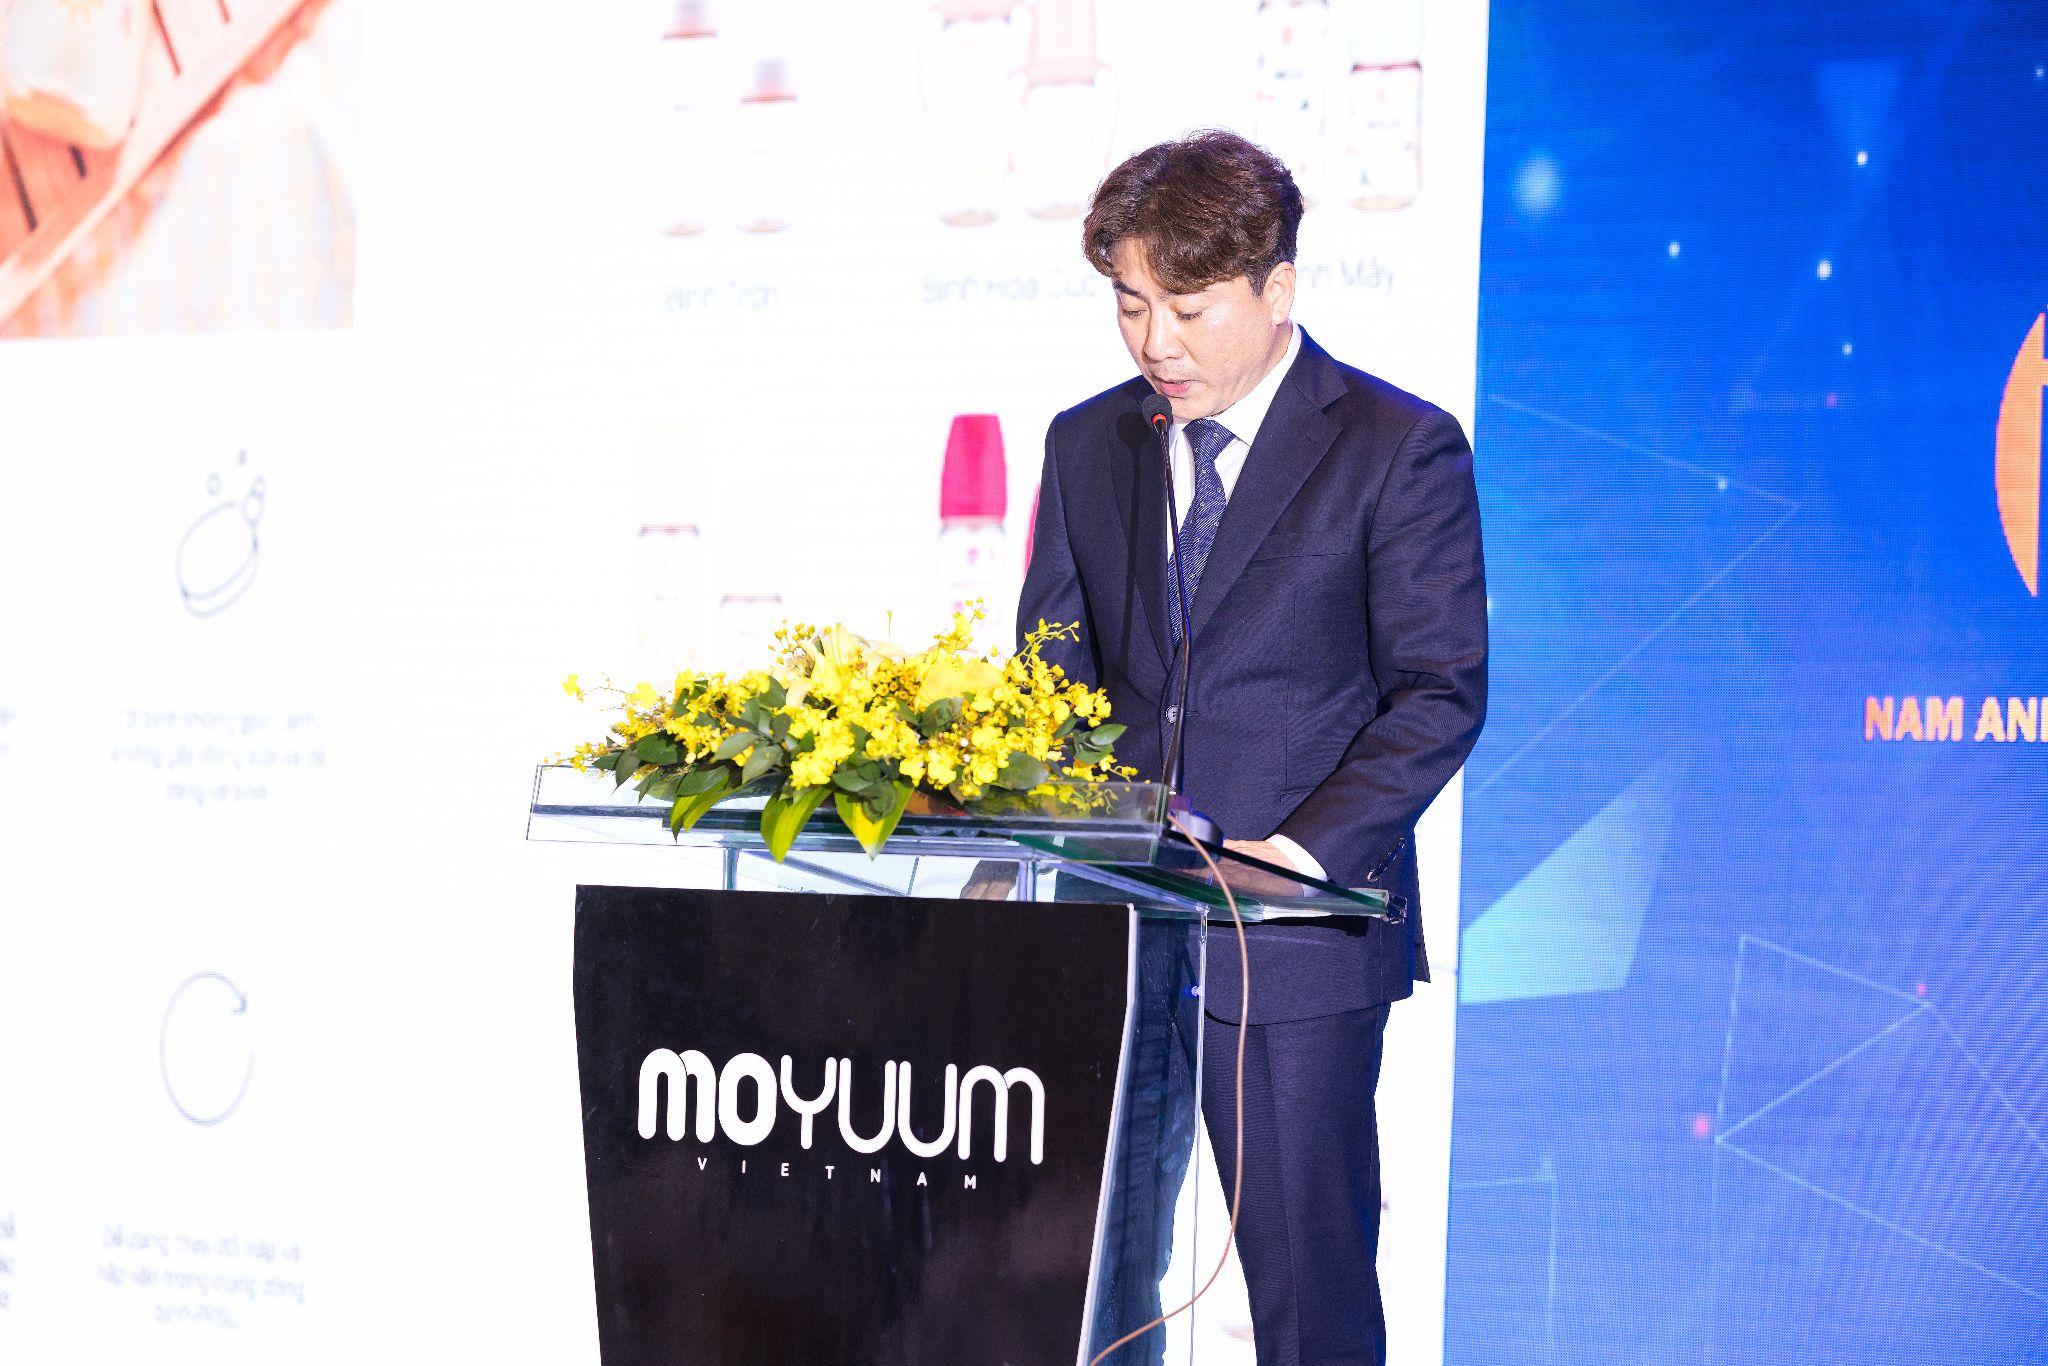 Thương hiệu Moyuum Hàn Quốc tham vọng chiếm lĩnh thị trường mẹ và bé Việt Nam - 2